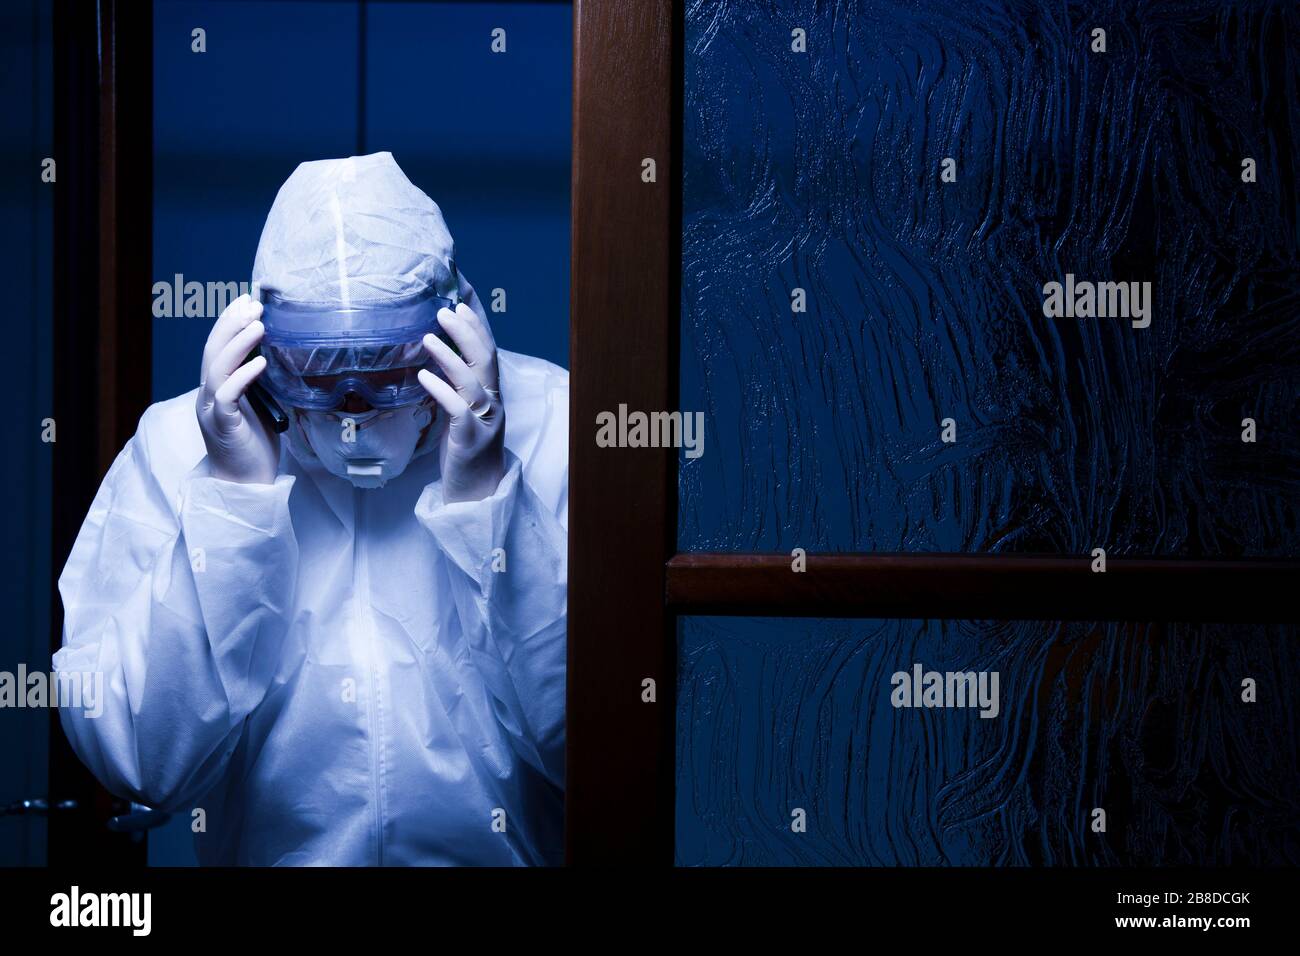 Der Arzt am Eingang eines Krankenhauses legt ihm eine Schutzmaske ins Gesicht - von Nacht mit dunkelblauem Hintergrund erschossen Stockfoto